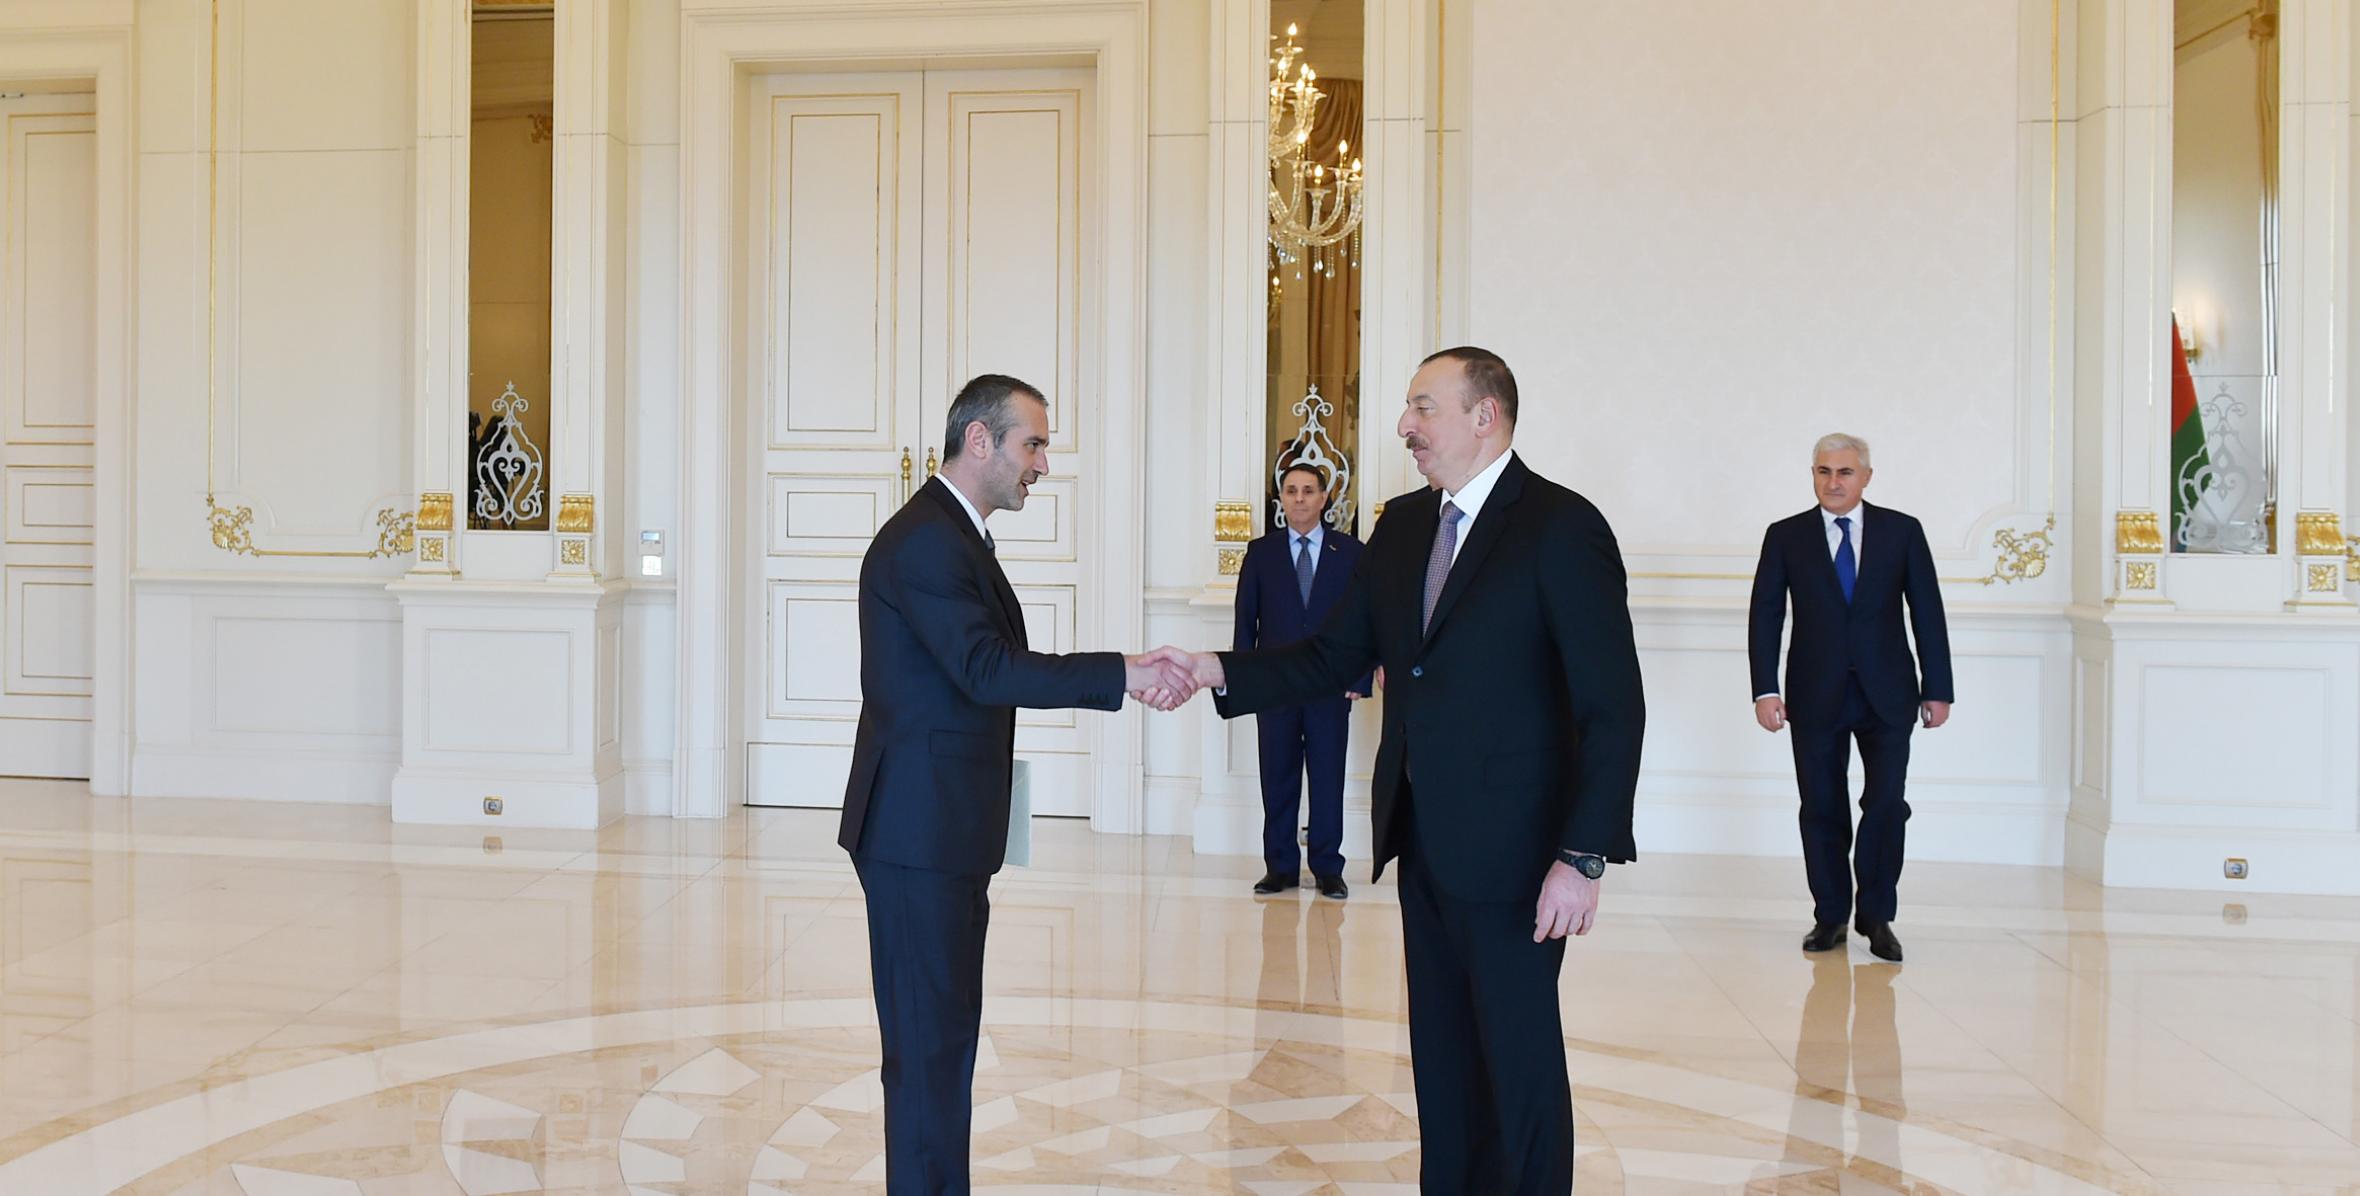 Ильхам Алиев принял верительные грамоты новоназначенного посла Словении в Азербайджане